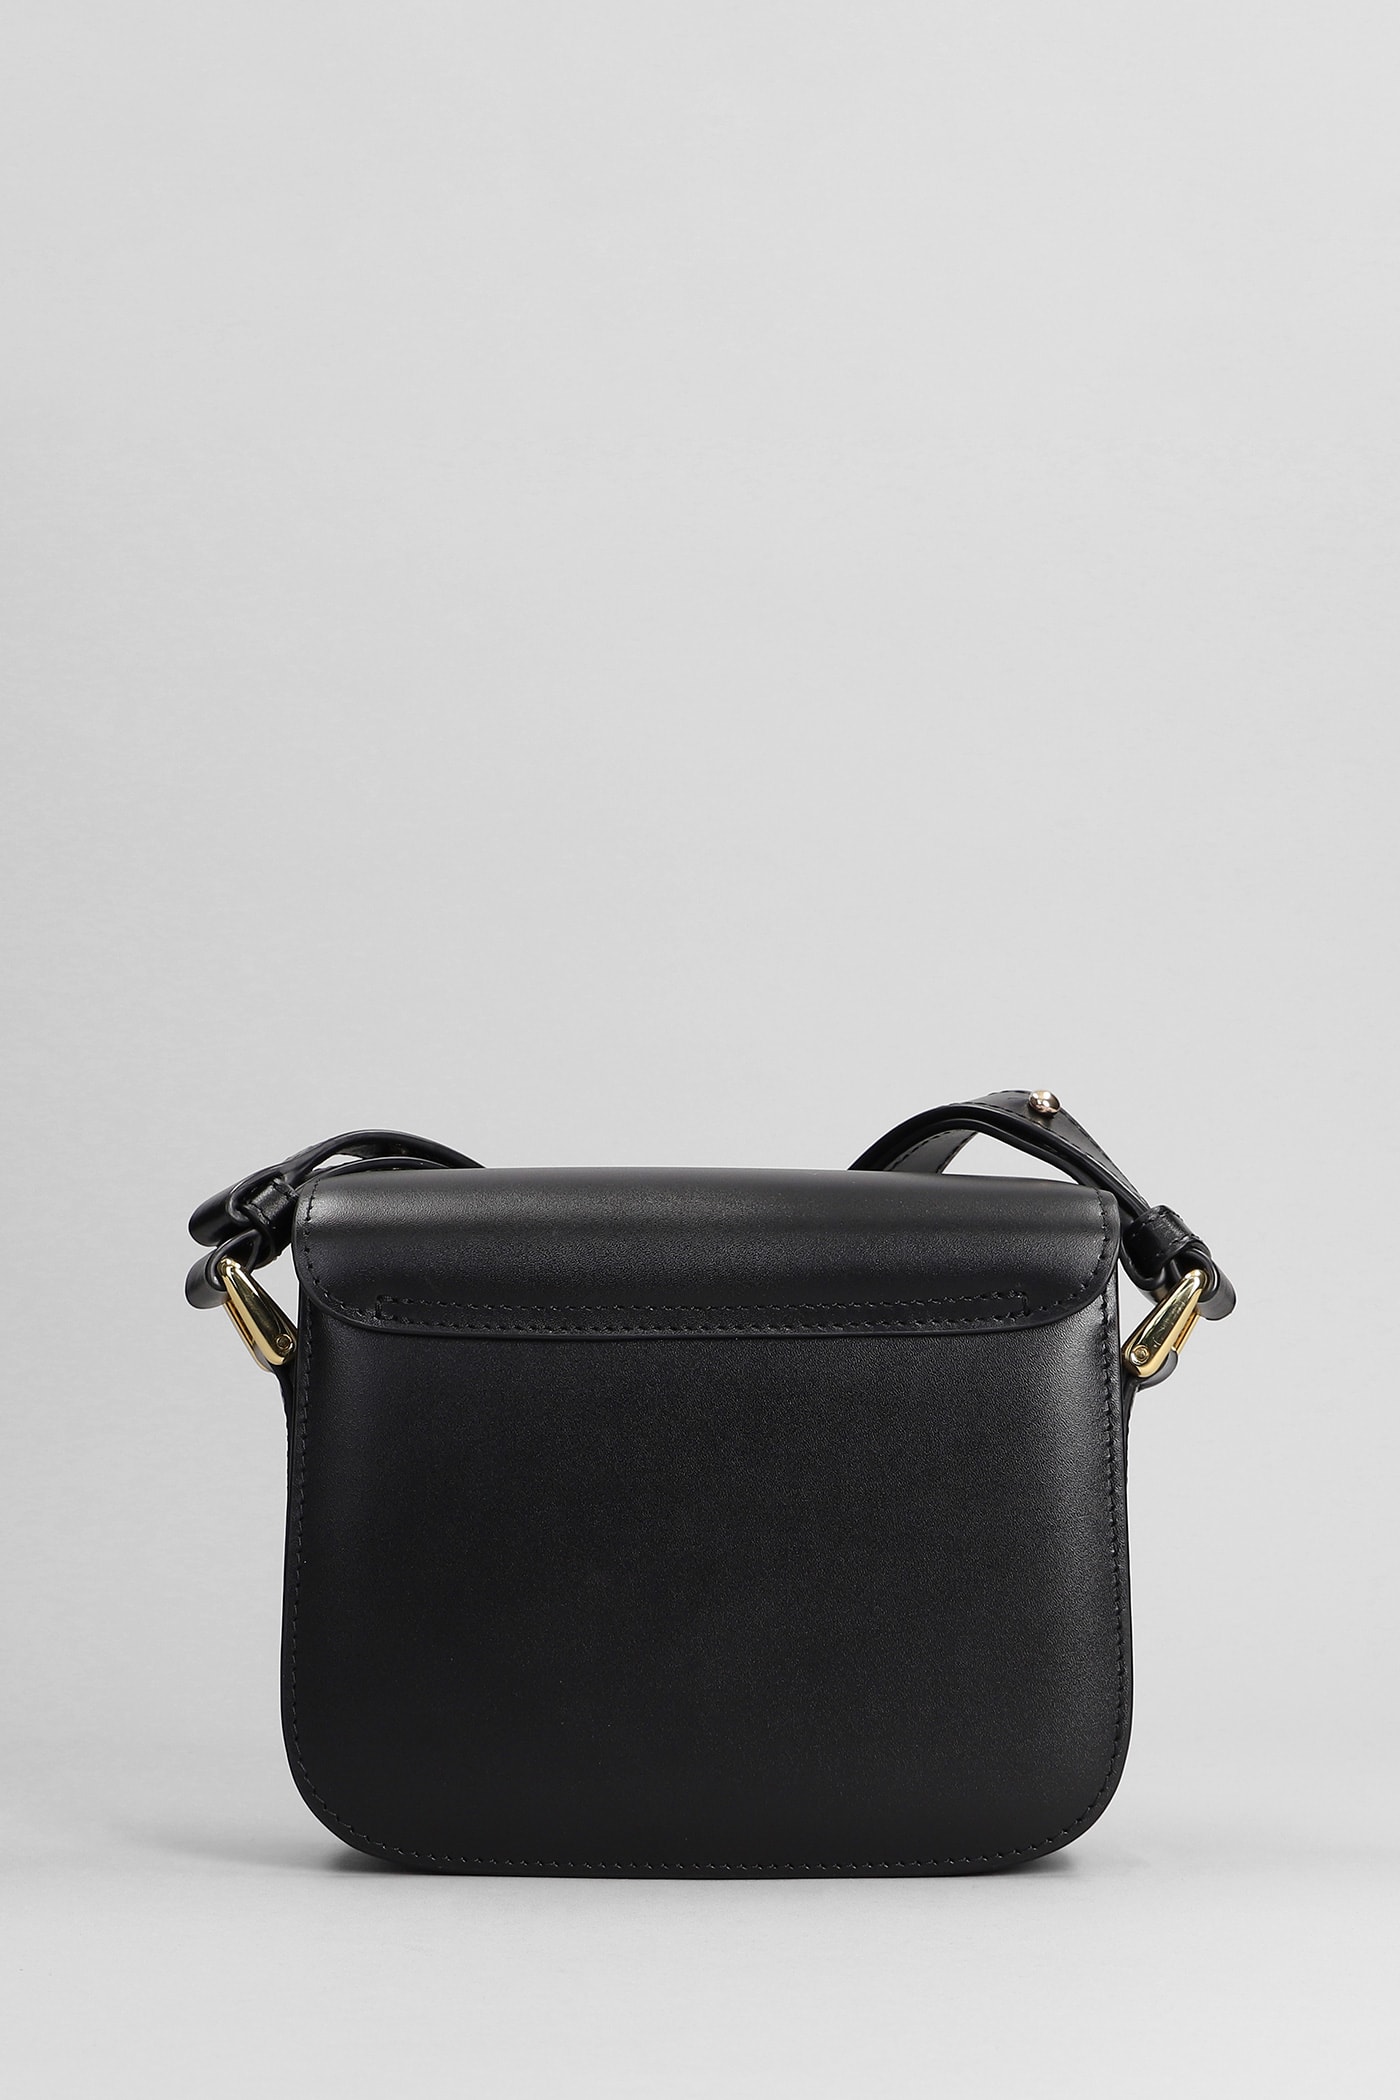 Shop Apc Grace Mini Shoulder Bag In Black Leather